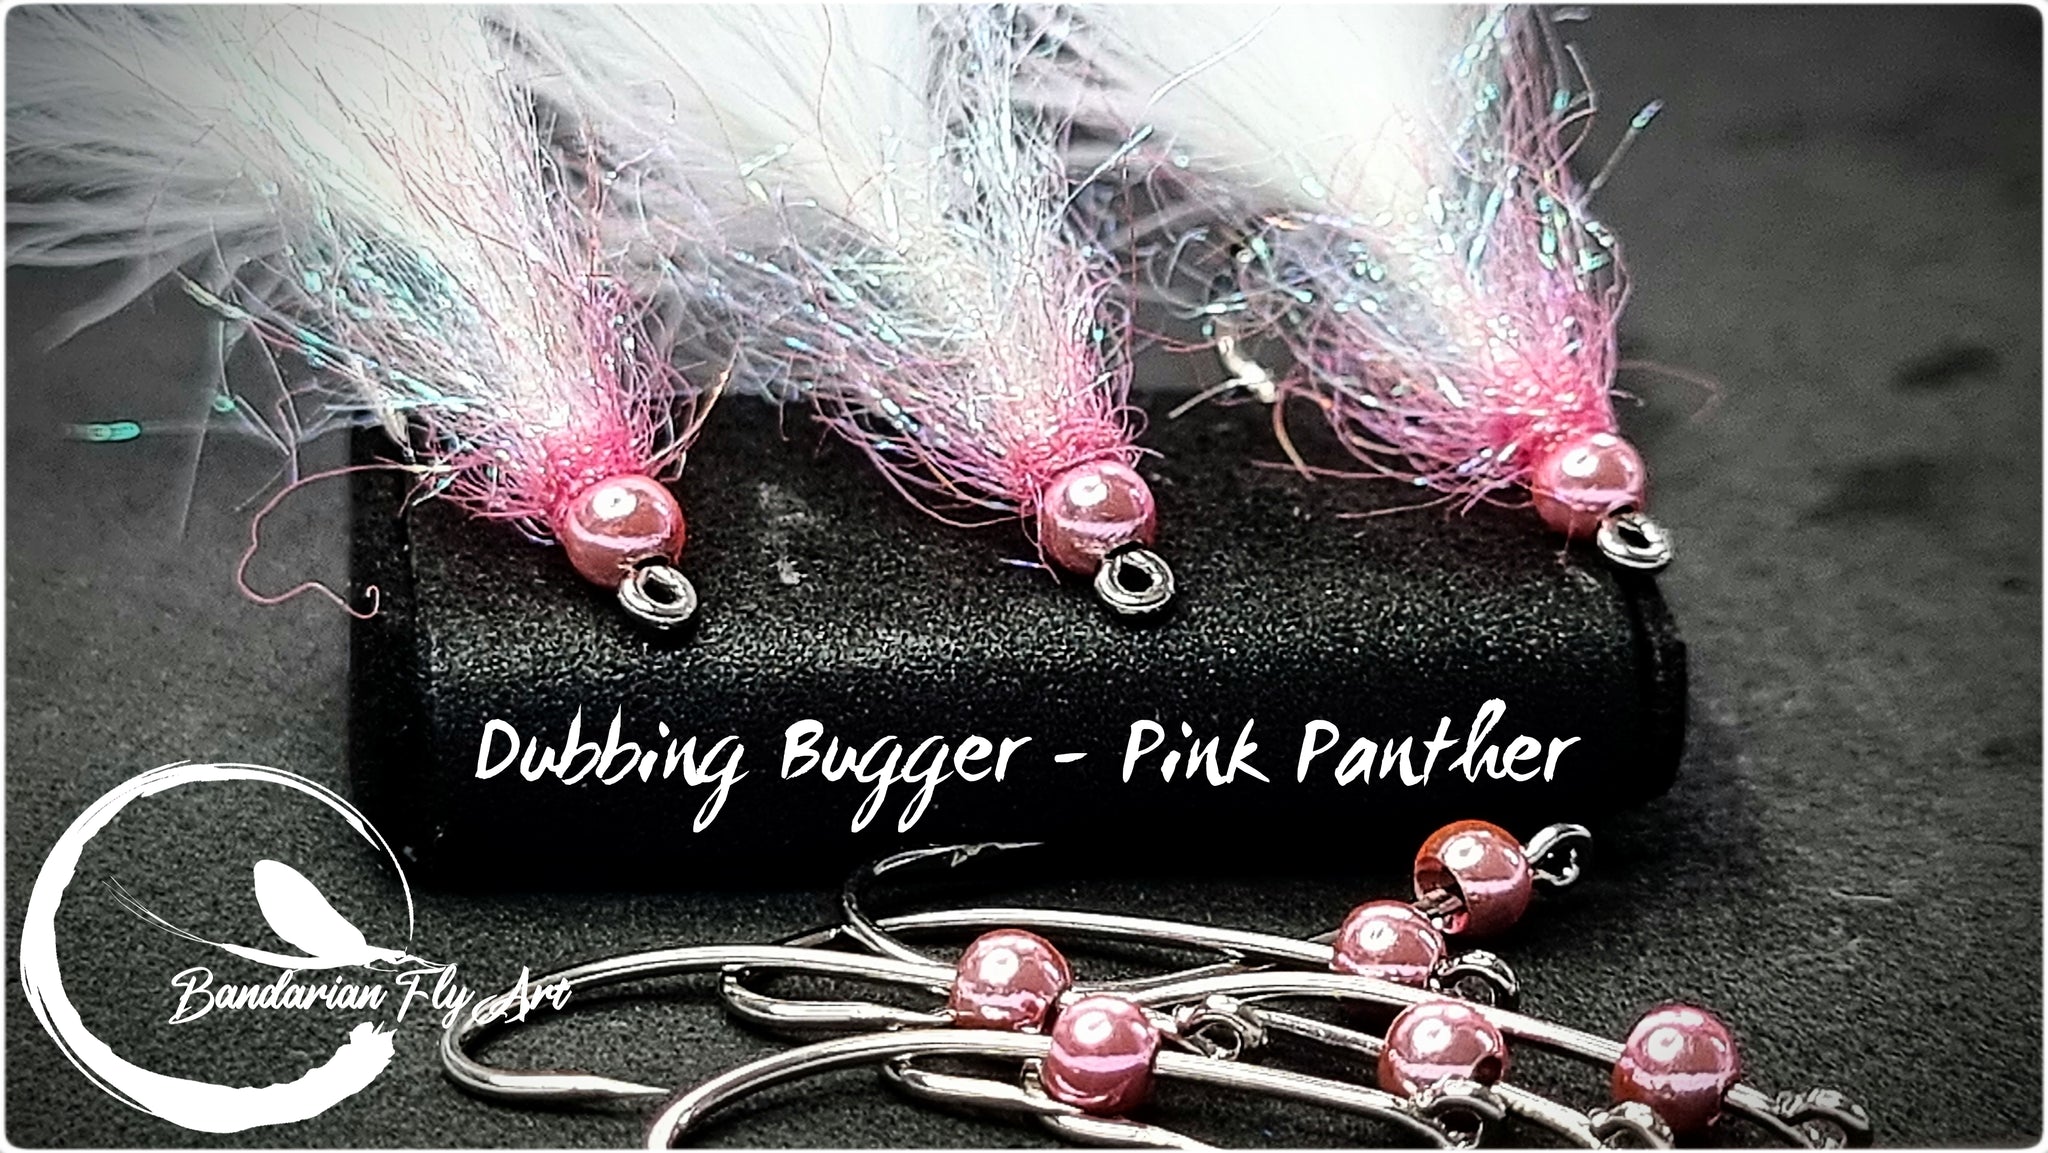 Dubbing bugger - Pink Panther